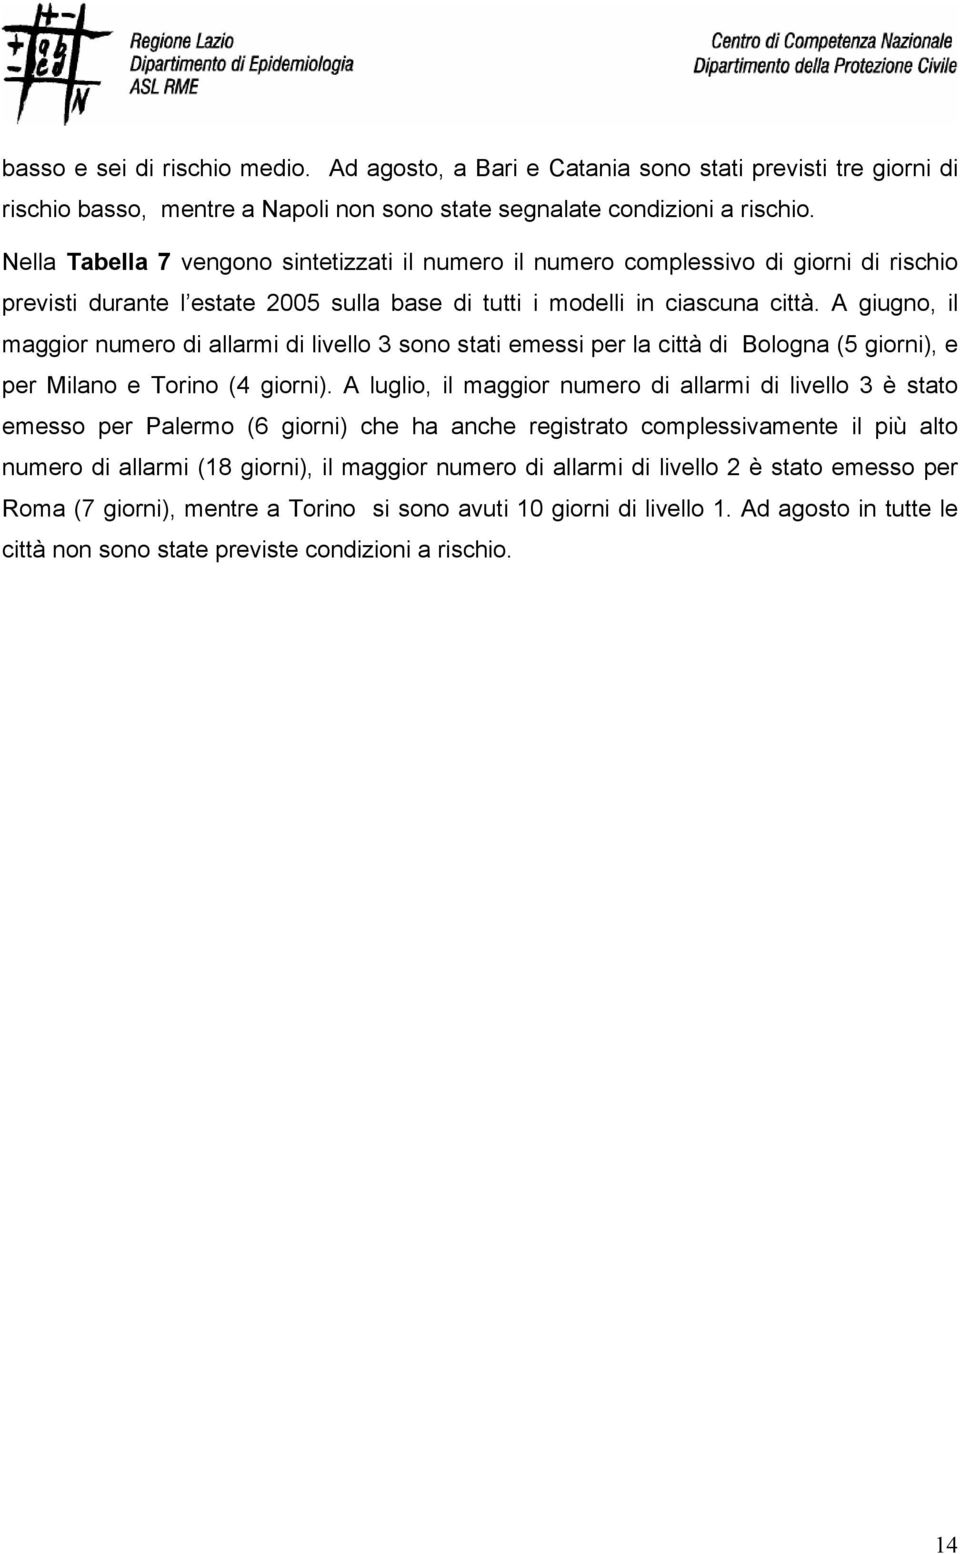 A giugno, il maggior numero di allarmi di livello 3 sono stati emessi per la città di Bologna (5 giorni), e per Milano e Torino (4 giorni).